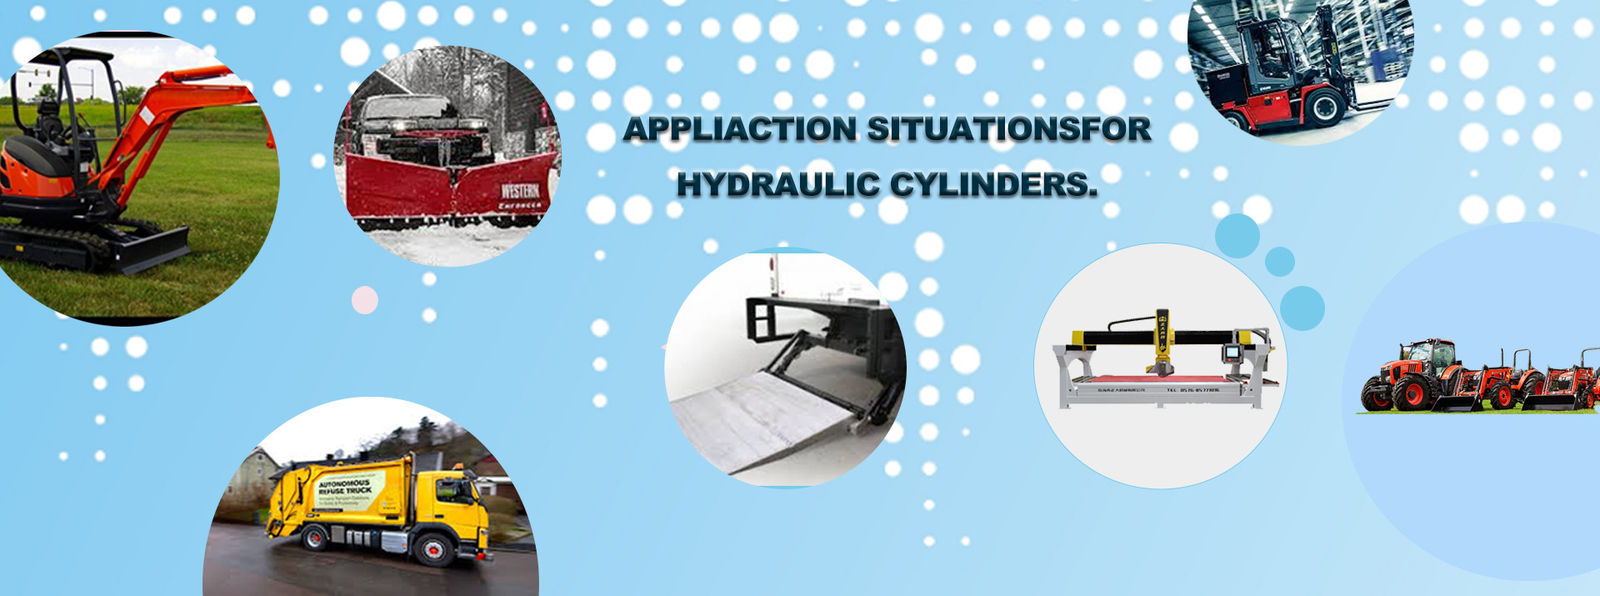 Qualität Kundengebundene Hydrozylinder Bedienung